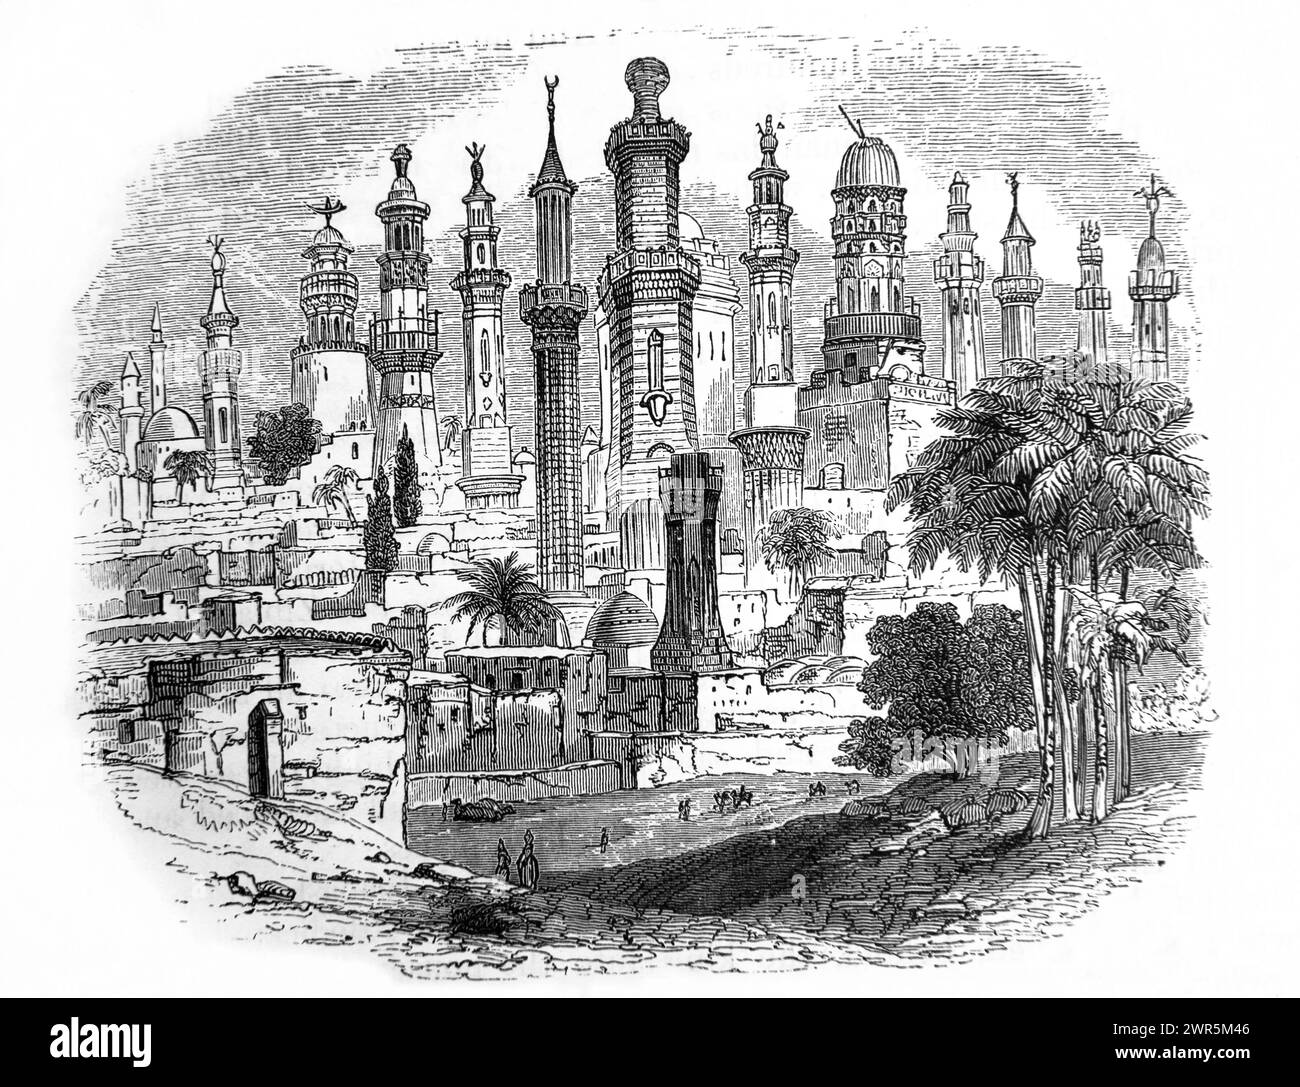 Illustration d'un groupe de tours de guet orientales choisies parmi des exemples dans les villes de basse-Égypte de la Bible de la famille illustrée antique du XIXe siècle Banque D'Images